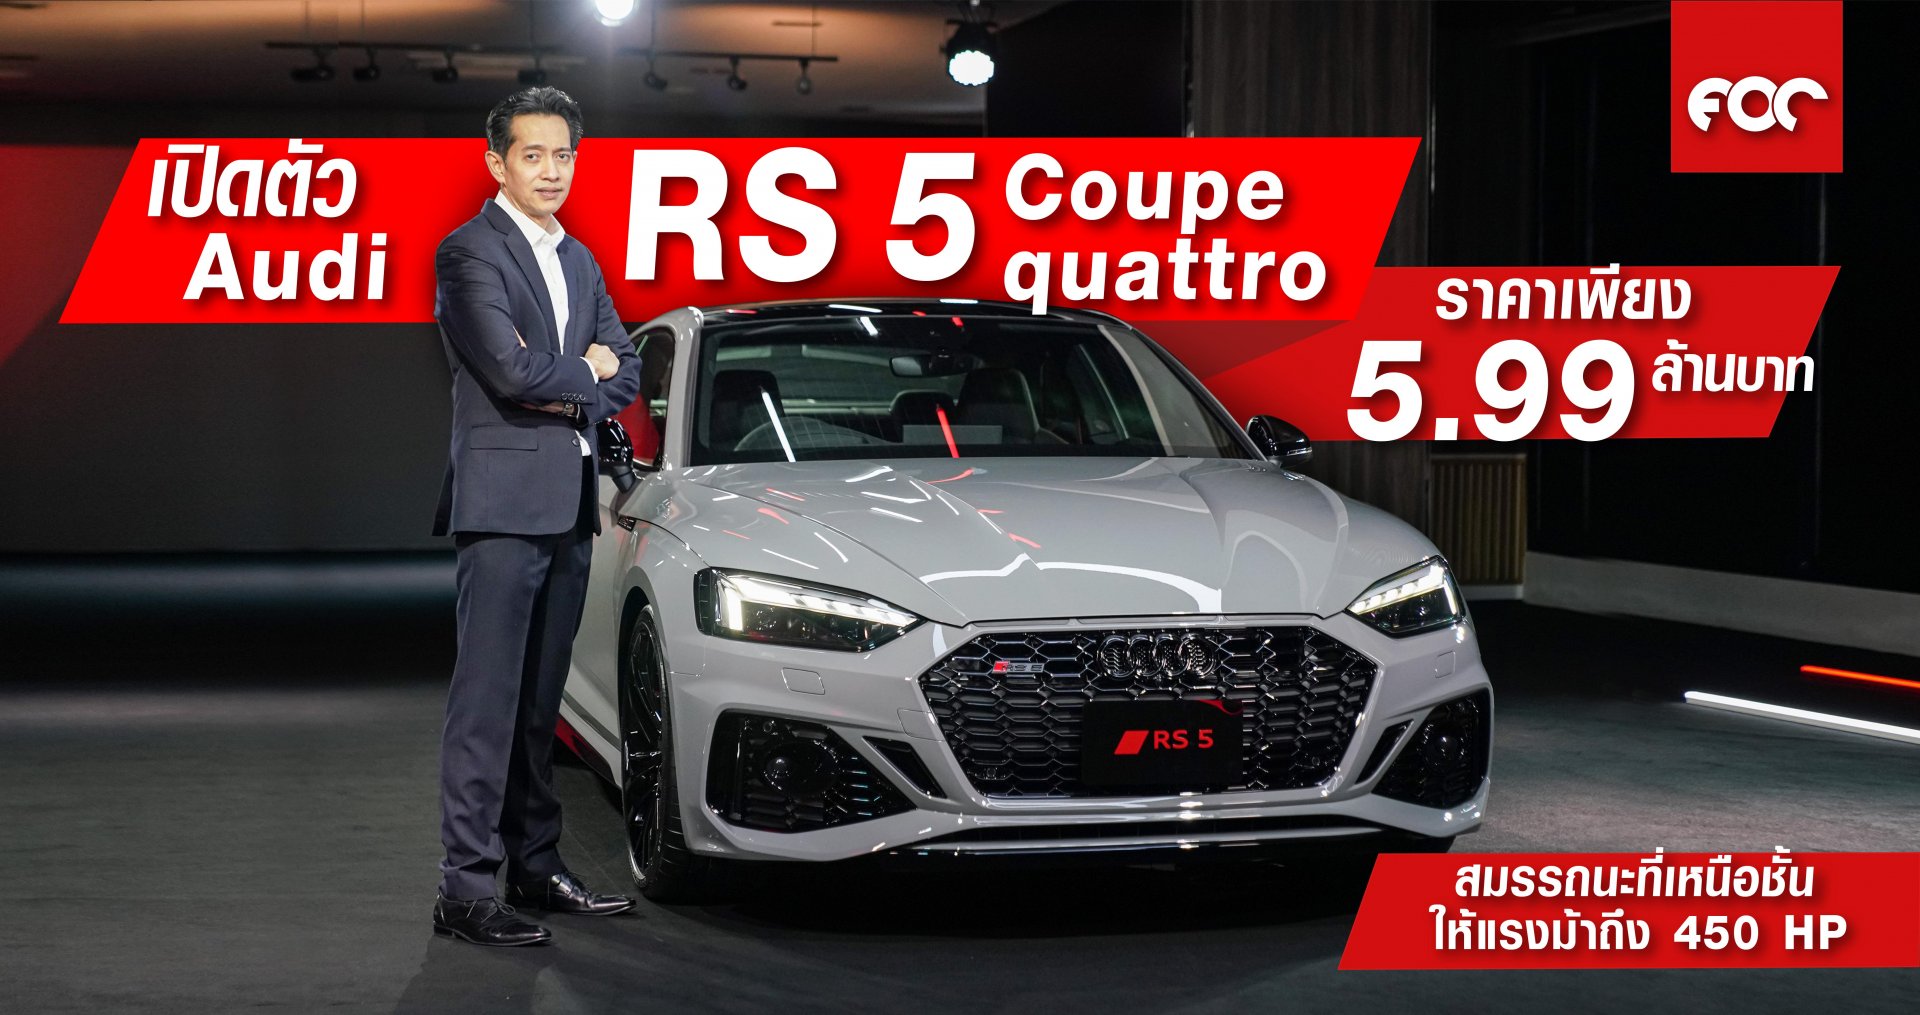 เปิดตัว Audi  RS 5 Coupé ราคา 5.99 ล้านบาท